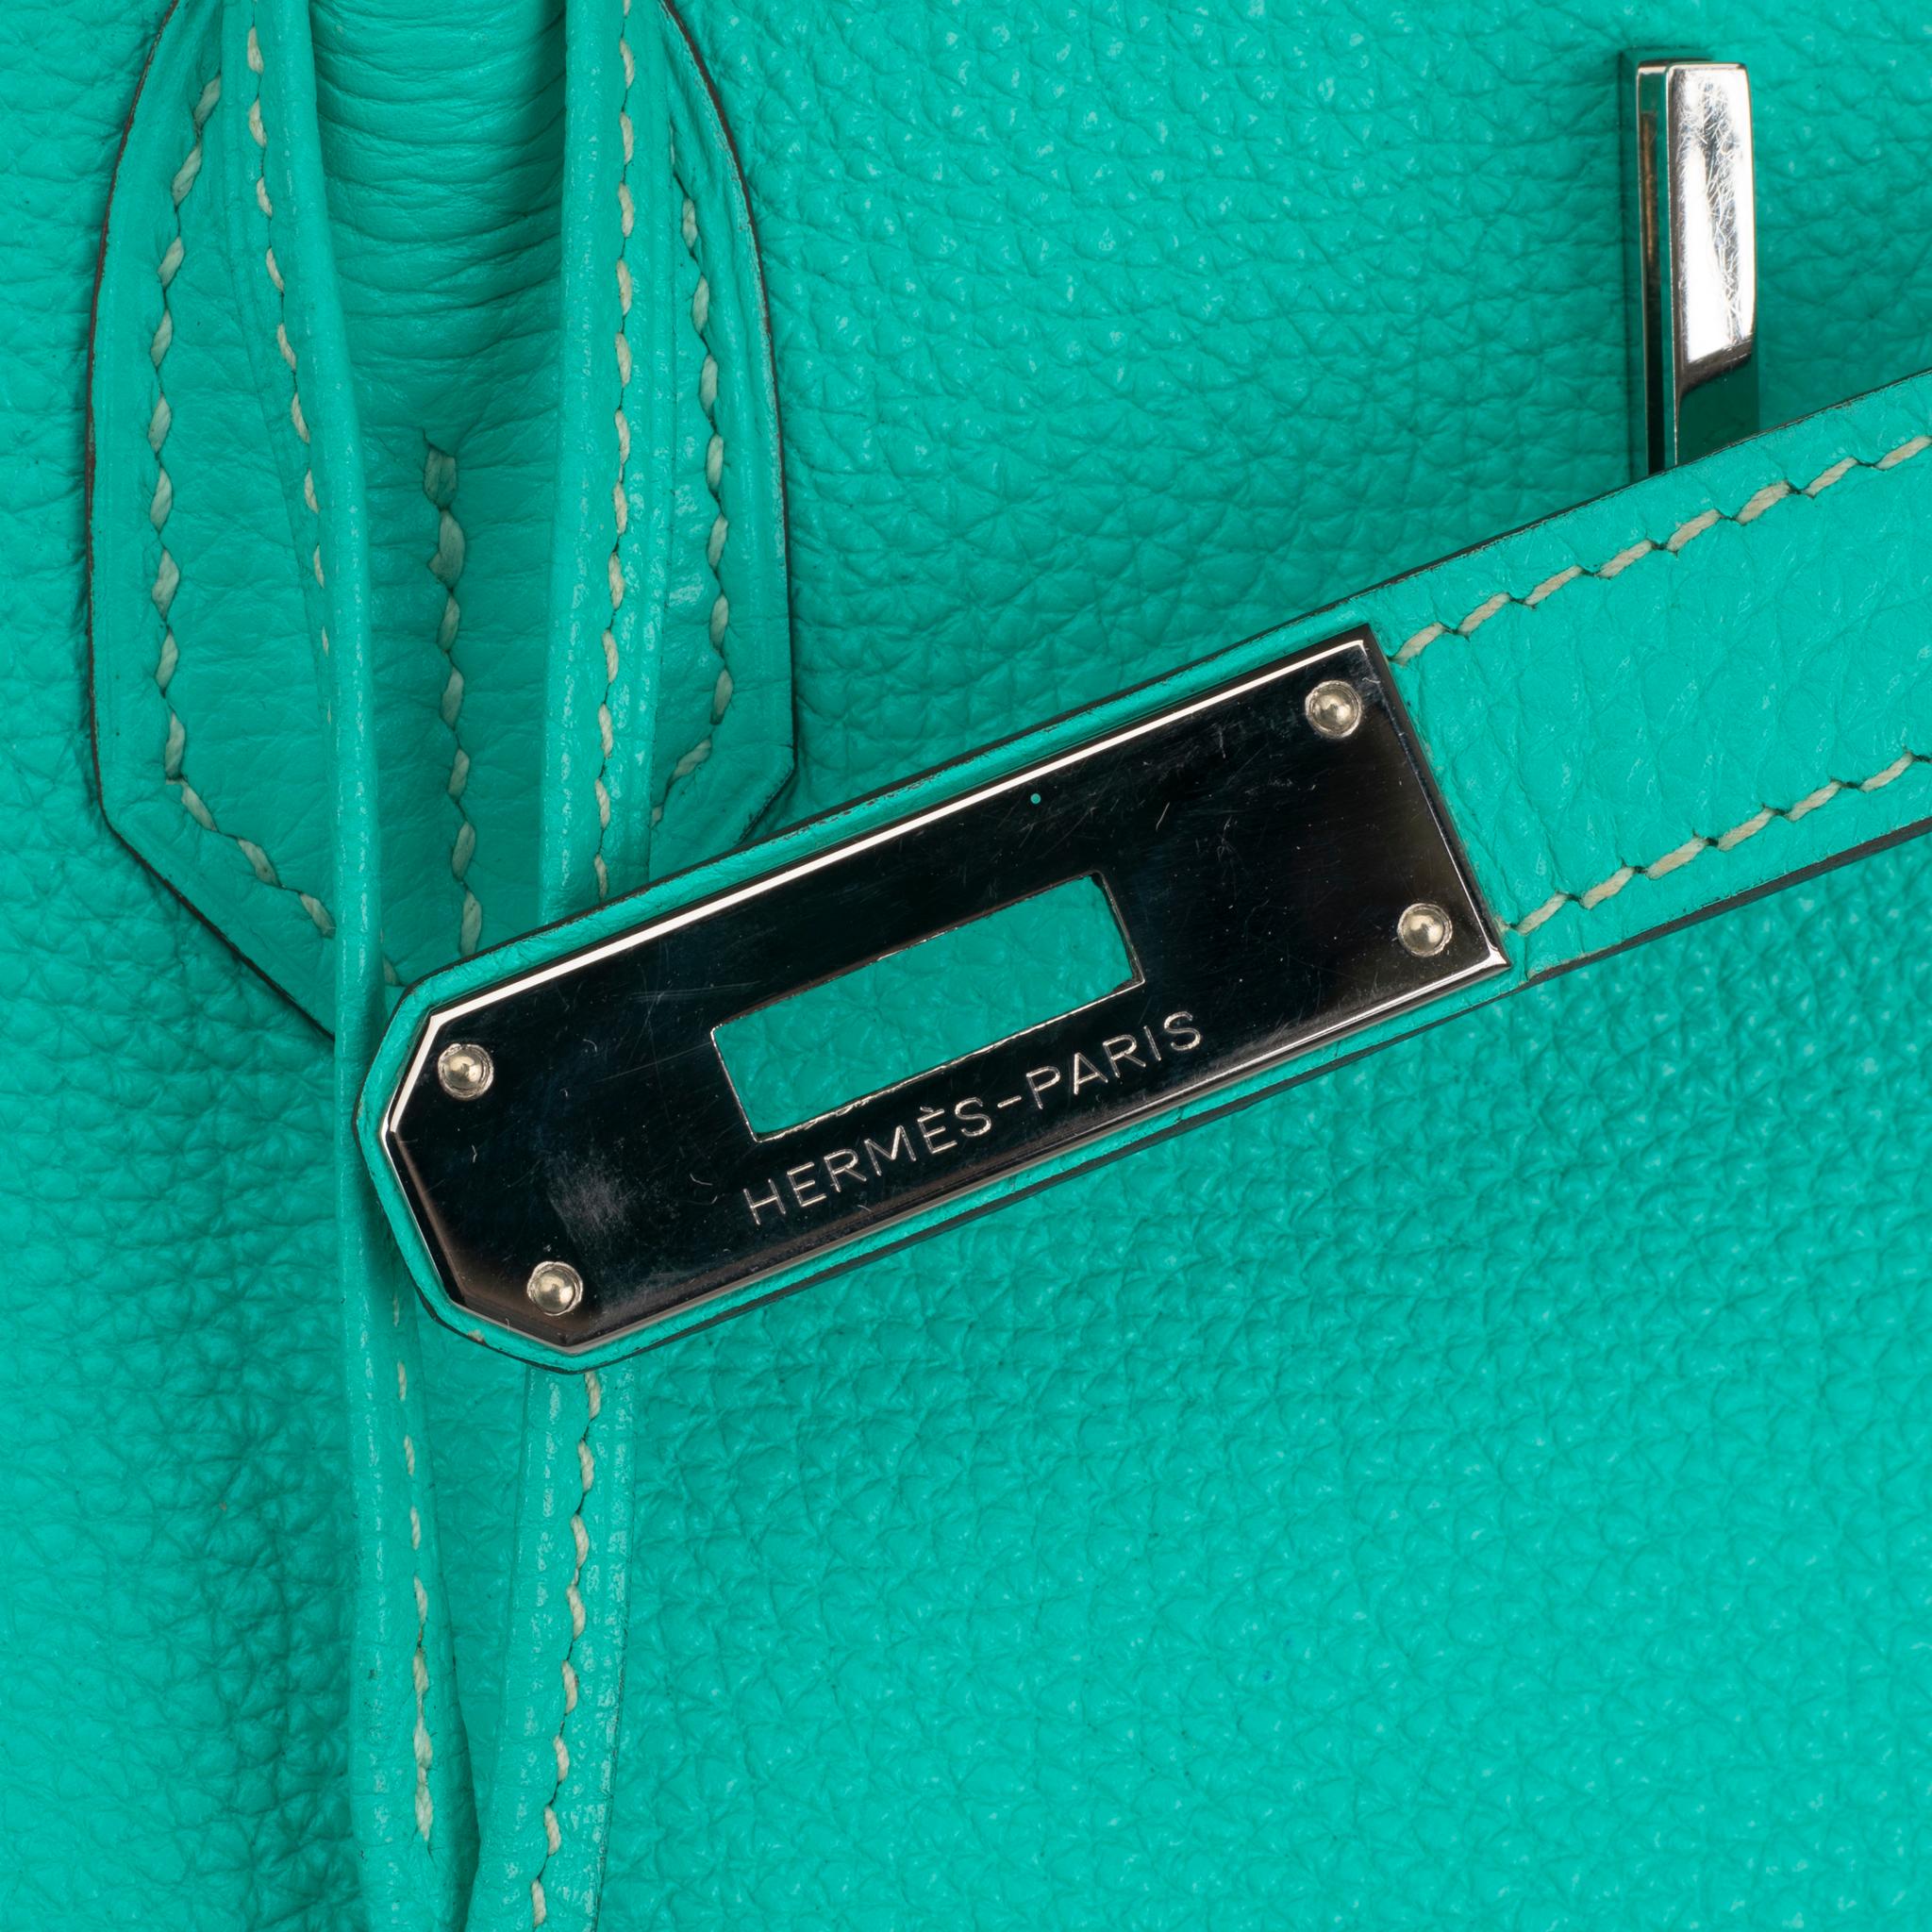 Hermès Birkin 40cm Lagoon Togo Leather Palladium Hardware For Sale 1